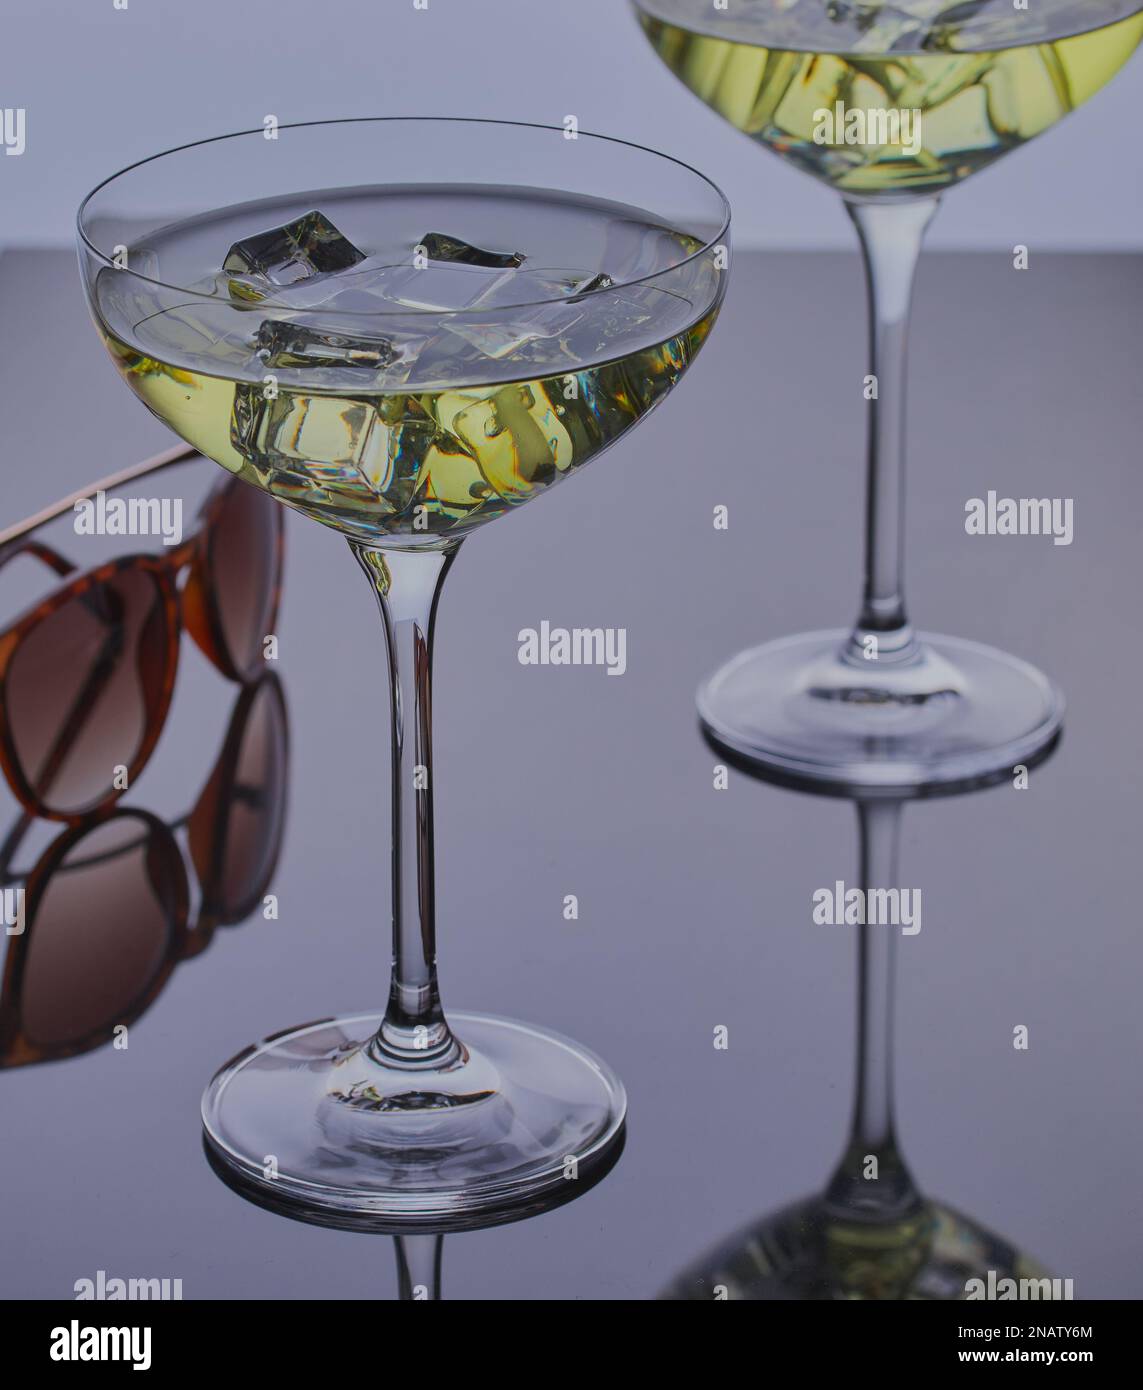 Deux cocktails avec glace sur une surface réfléchissante avec une paire de lunettes de soleil. Banque D'Images